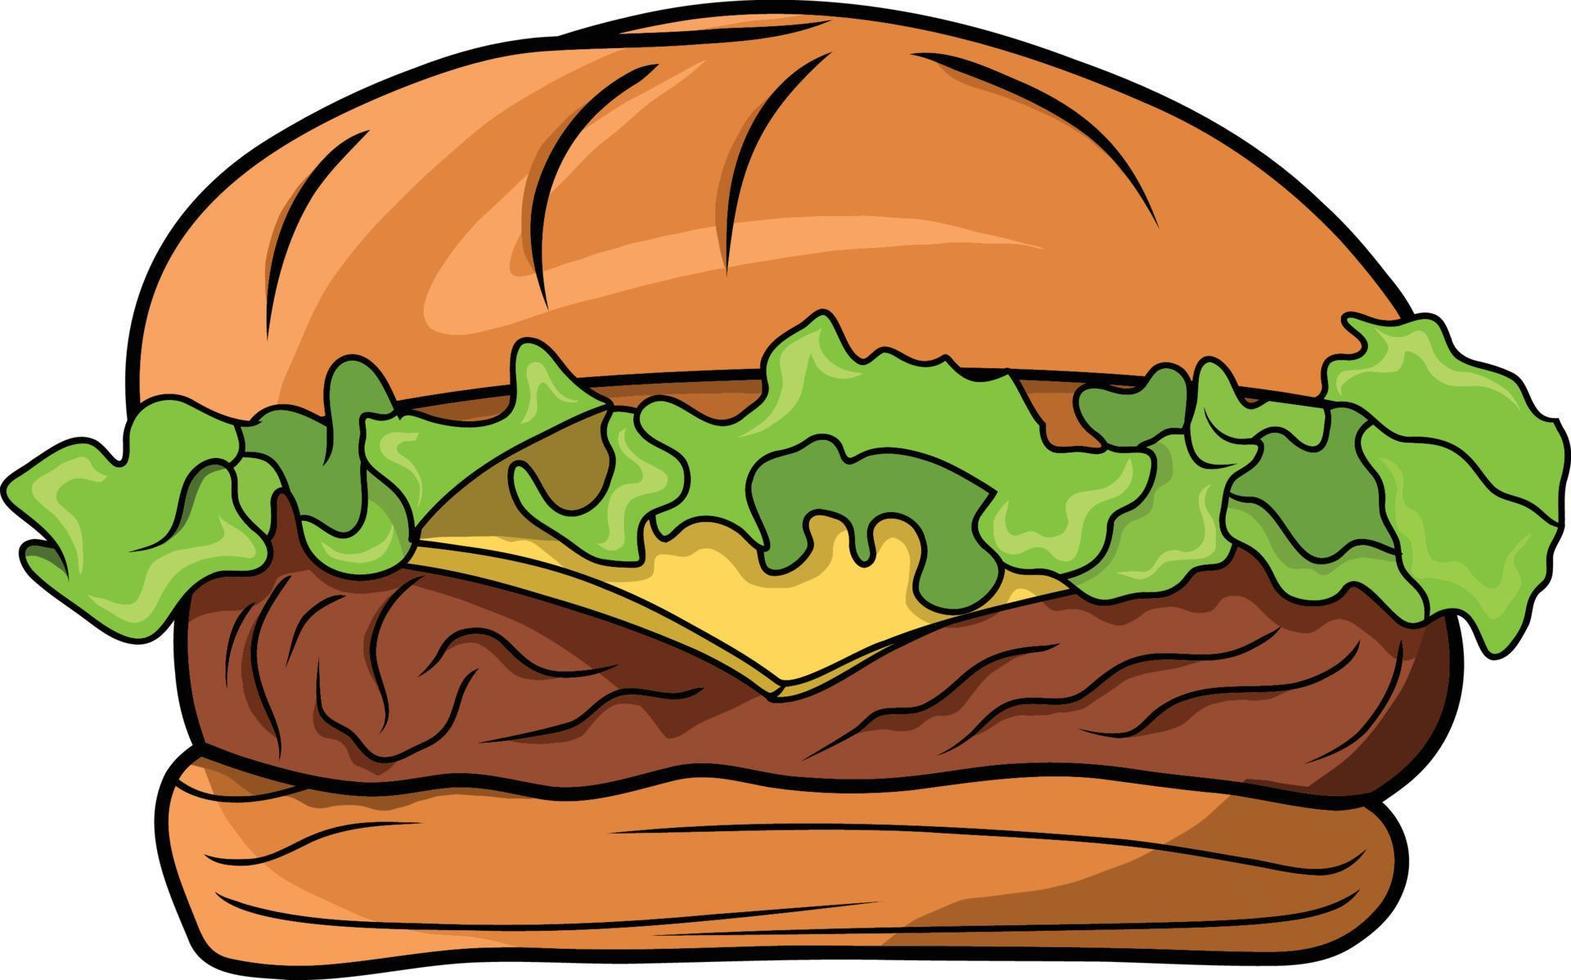 Hand drawn Hamburger Coloring Page vector